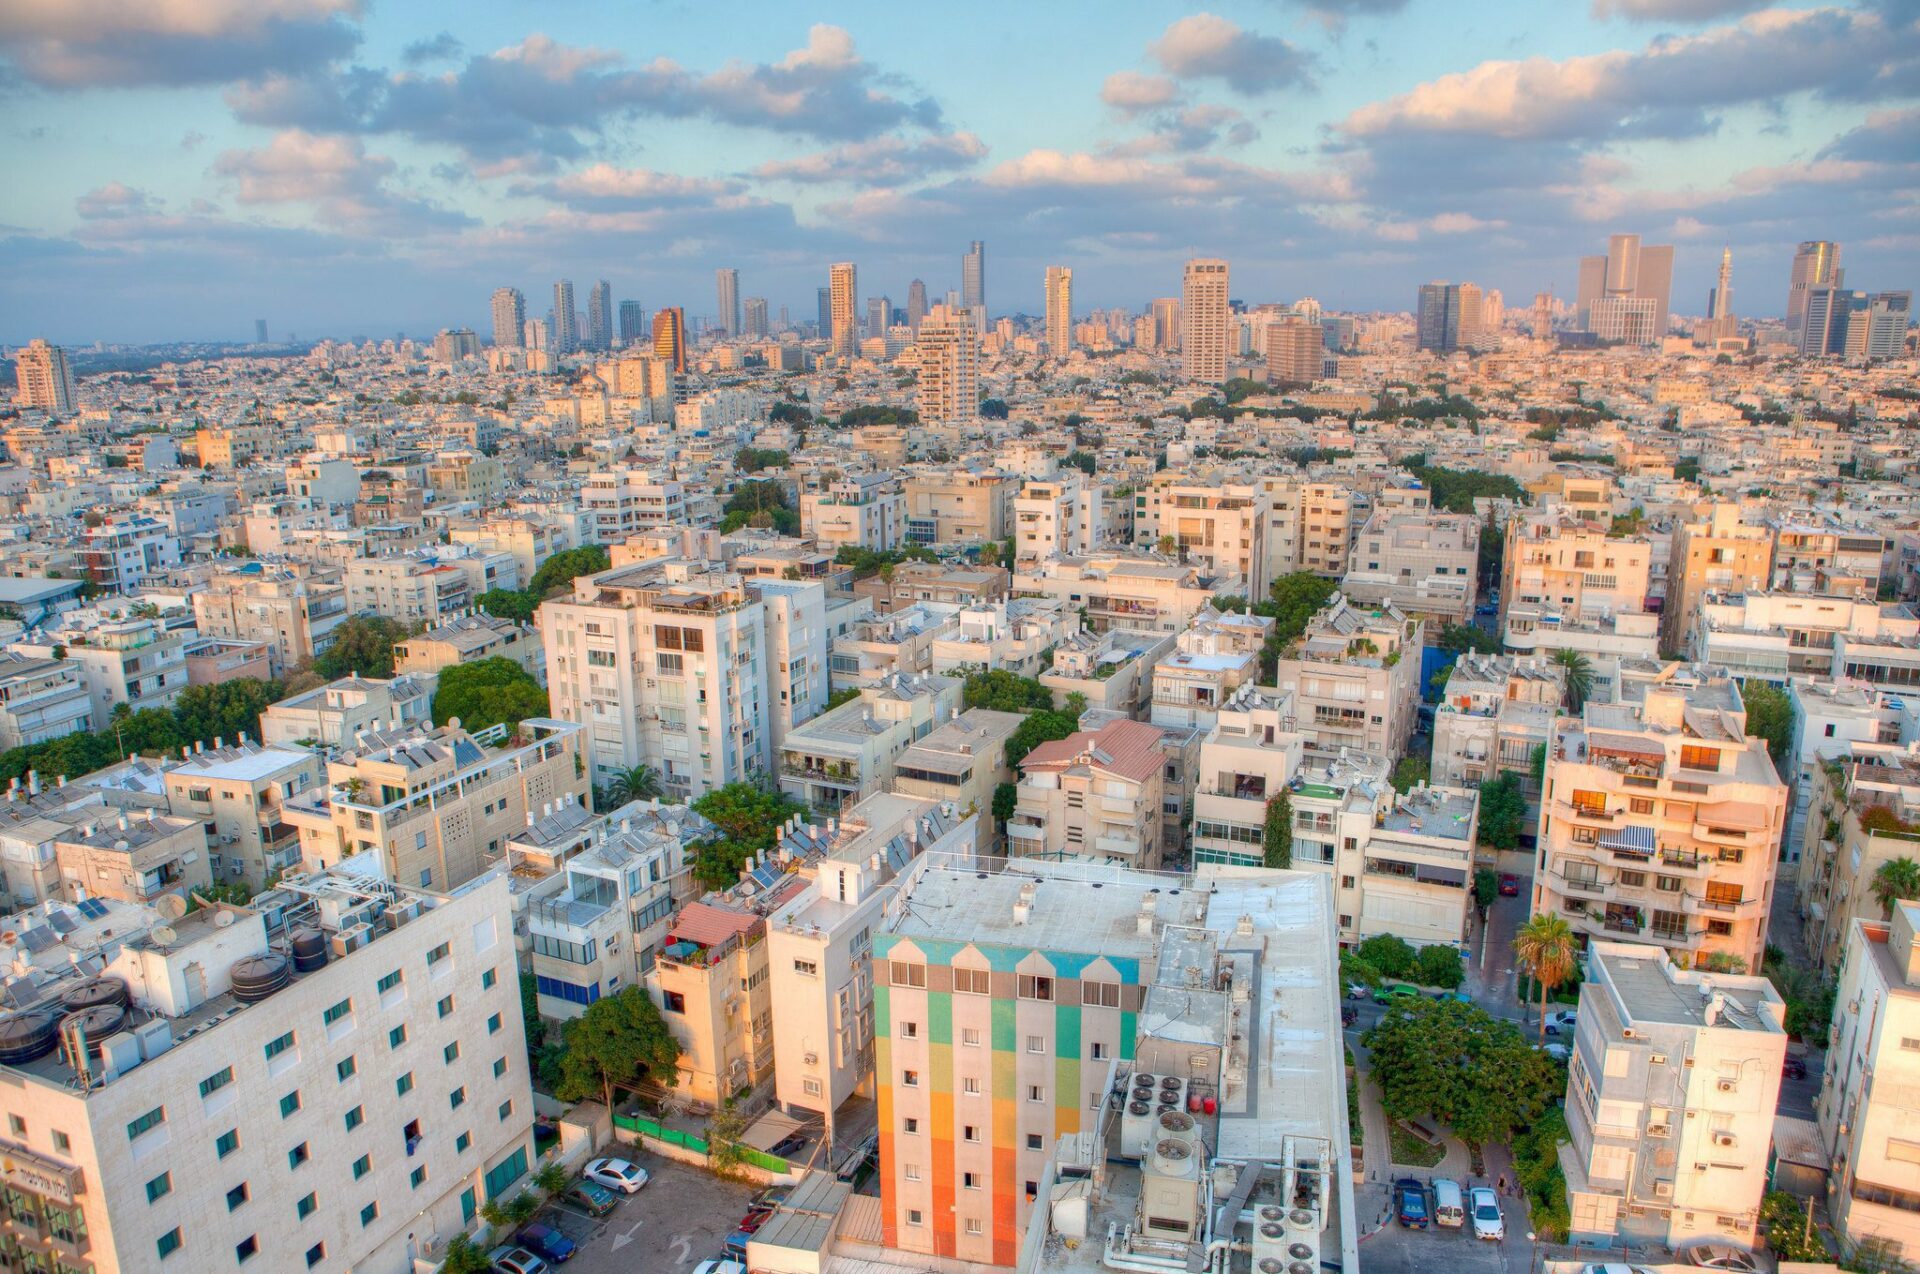 City of Tel Aviv